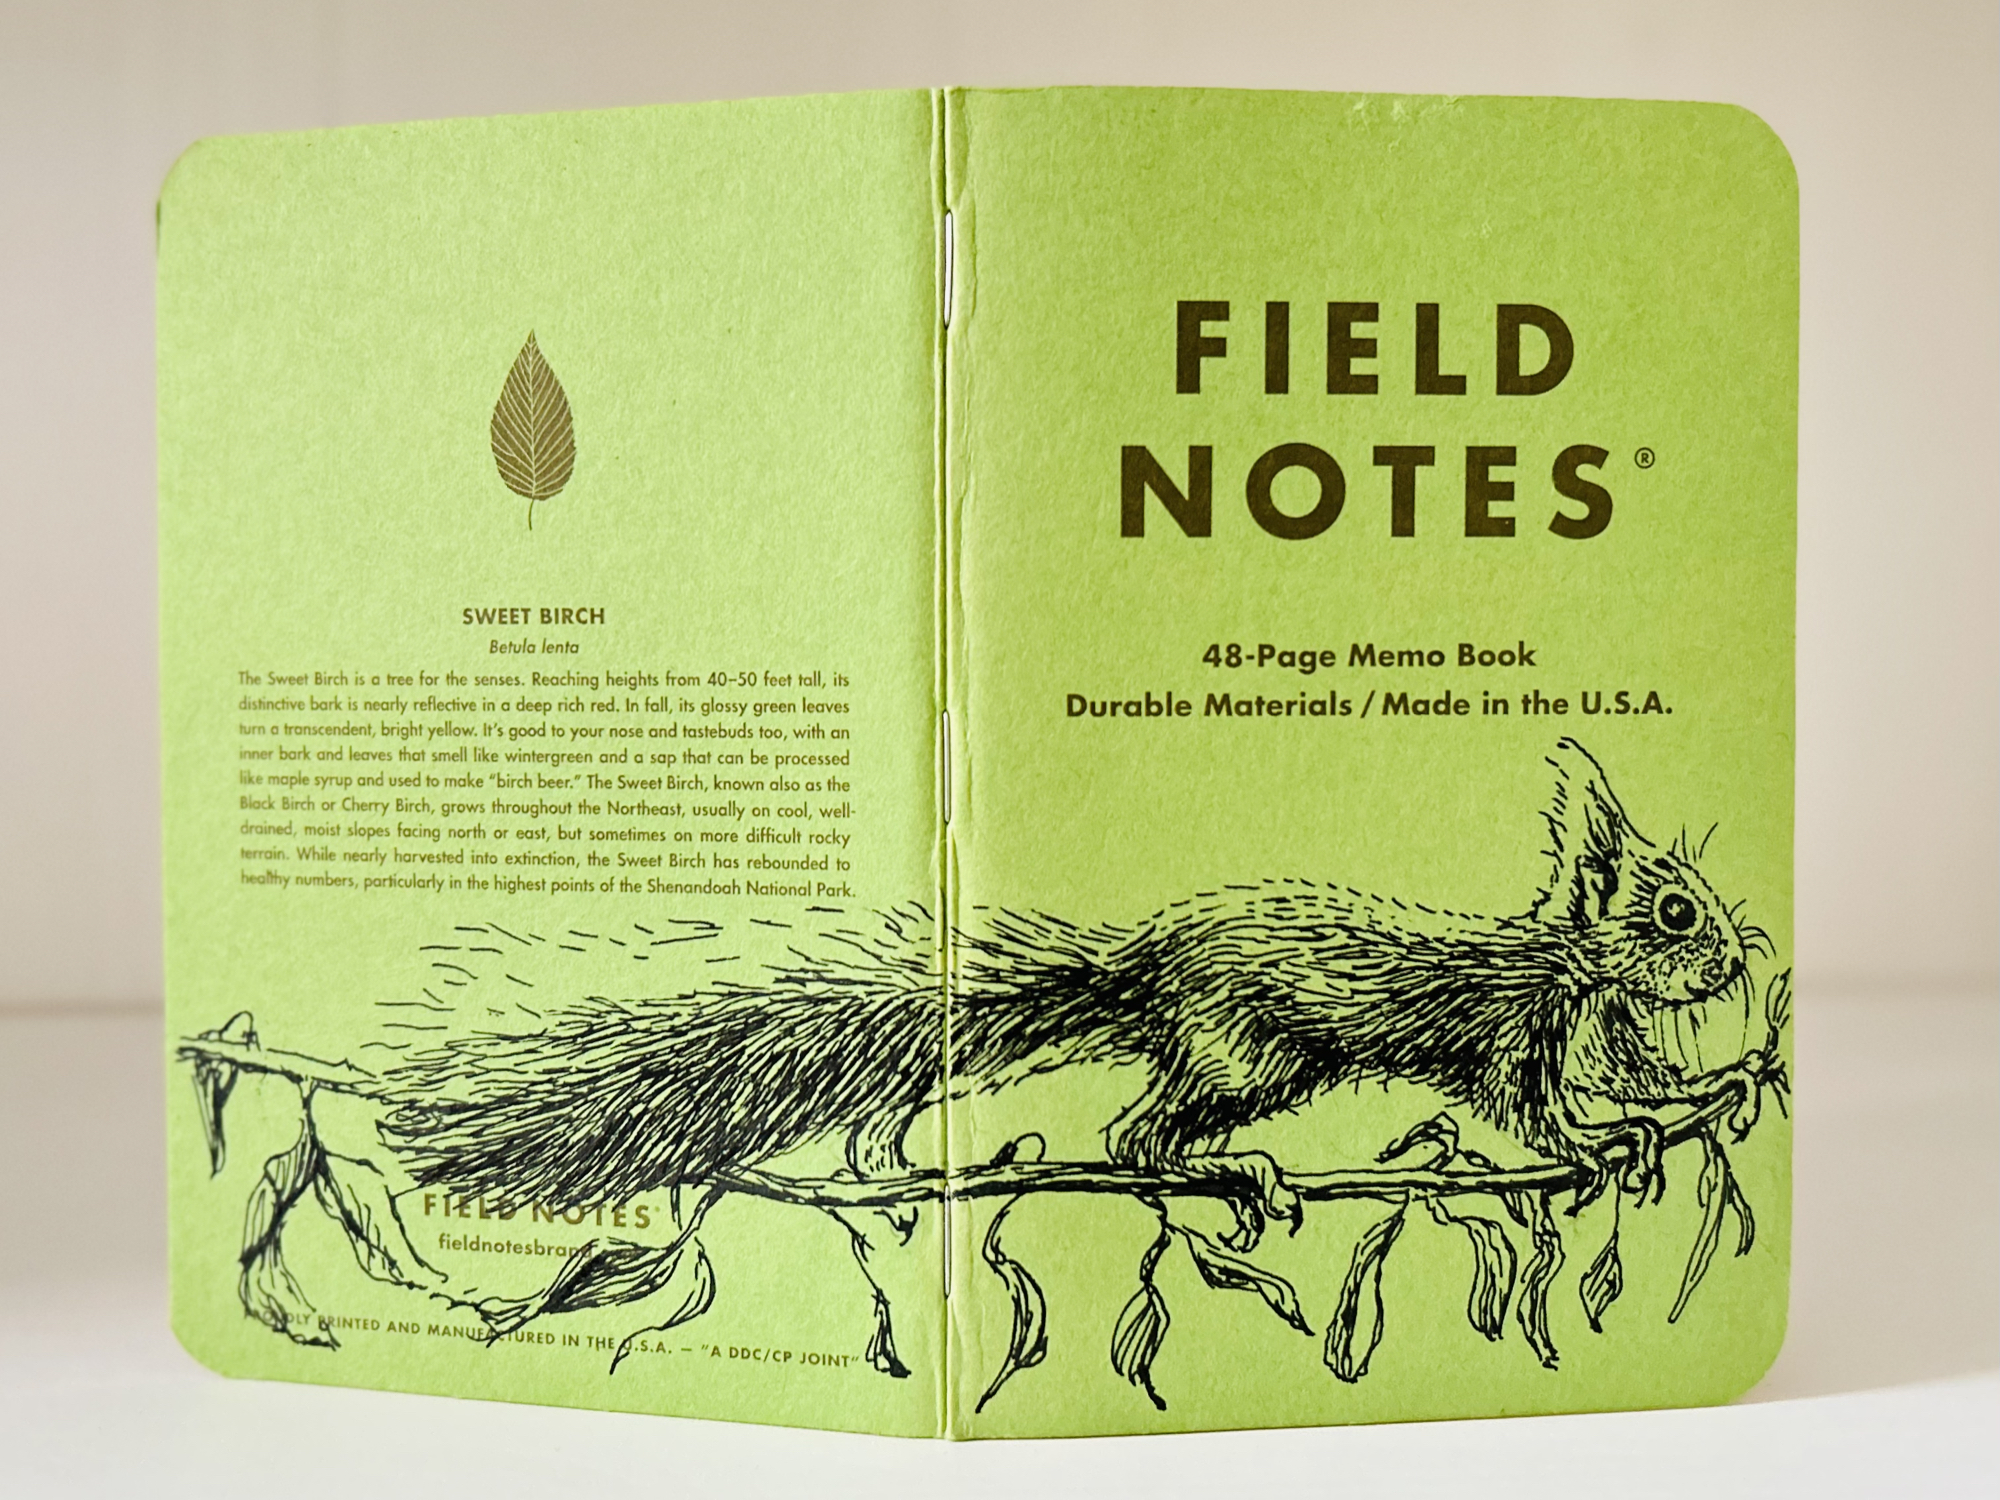 Ein grünes Notizbuch steht aufgeklappt auf einer hellen Oberfläche. Über den Rücken erstreckt sich die Zeichnung eines Eichhörnchens, das auf einem Ast läuft.